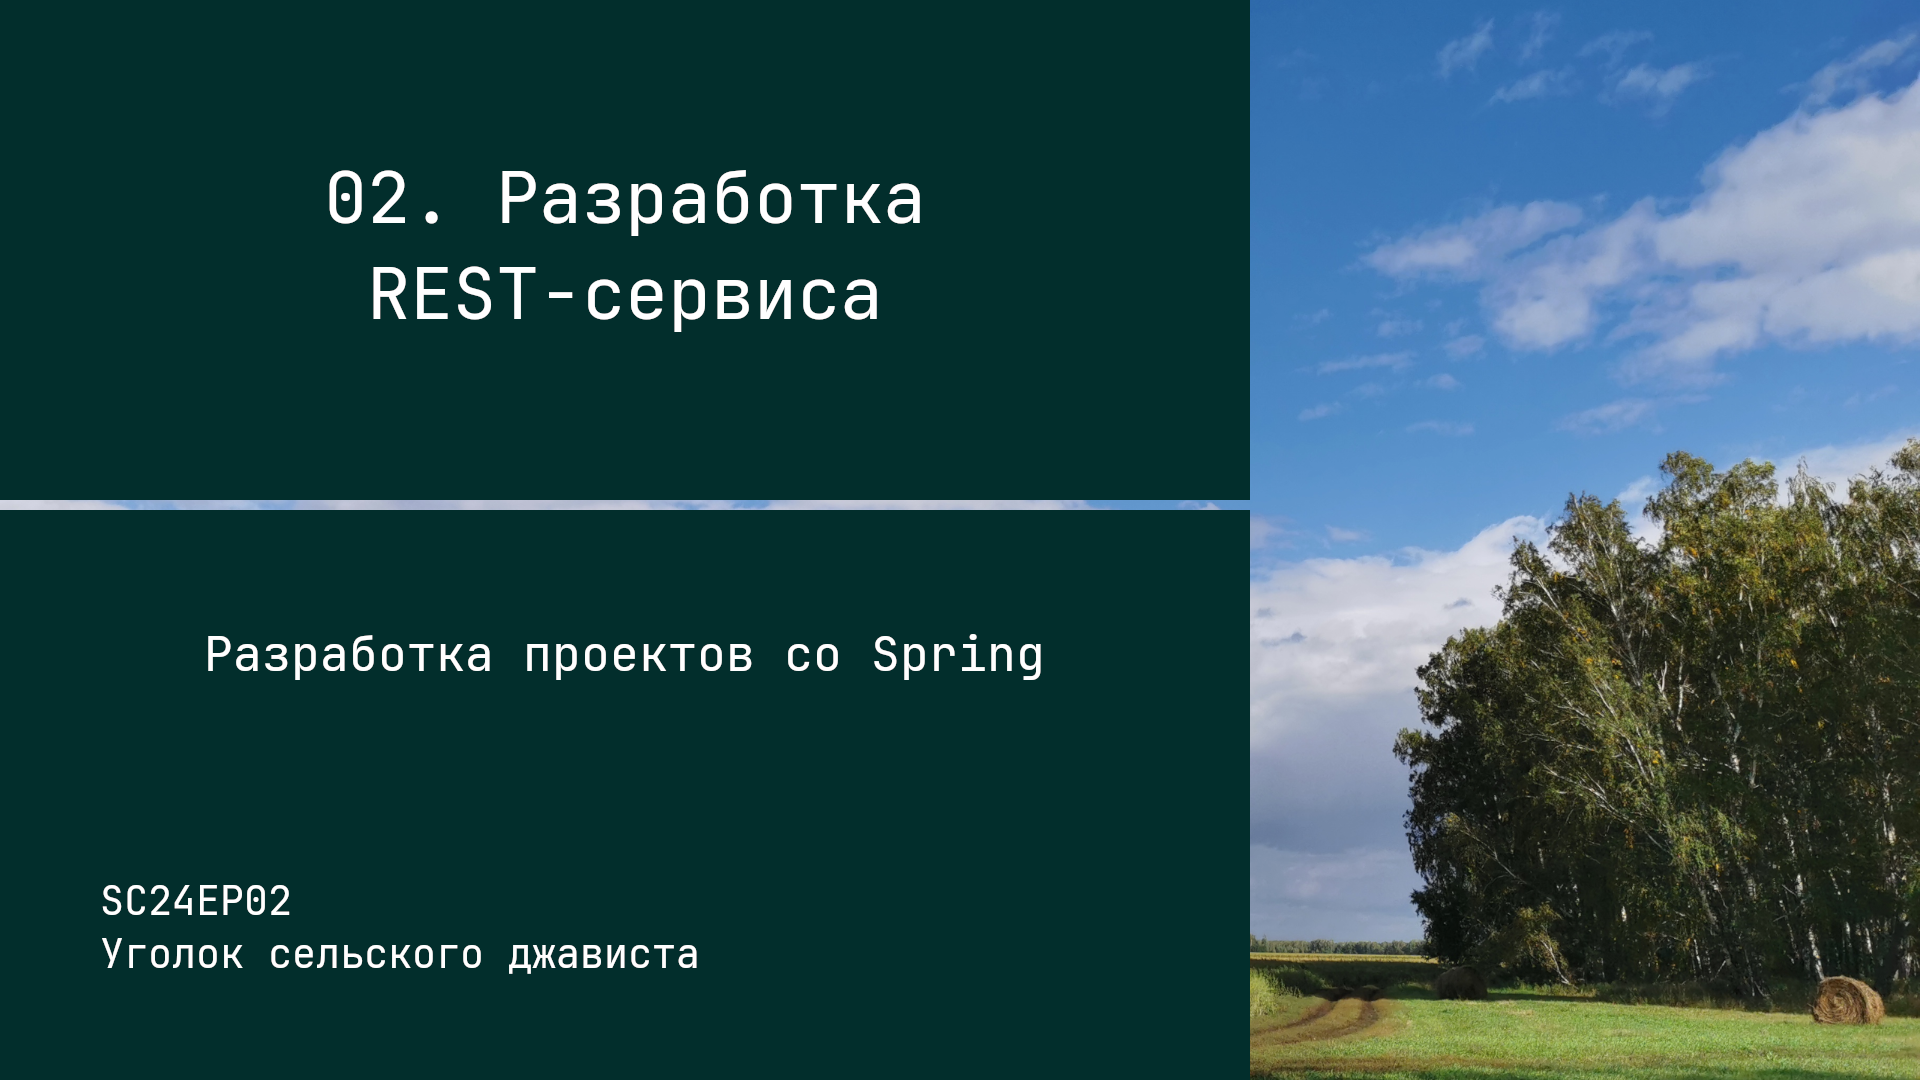 SC24EP02 Разработка REST-сервиса - Разработка проектов со Spring #java #spring #rest